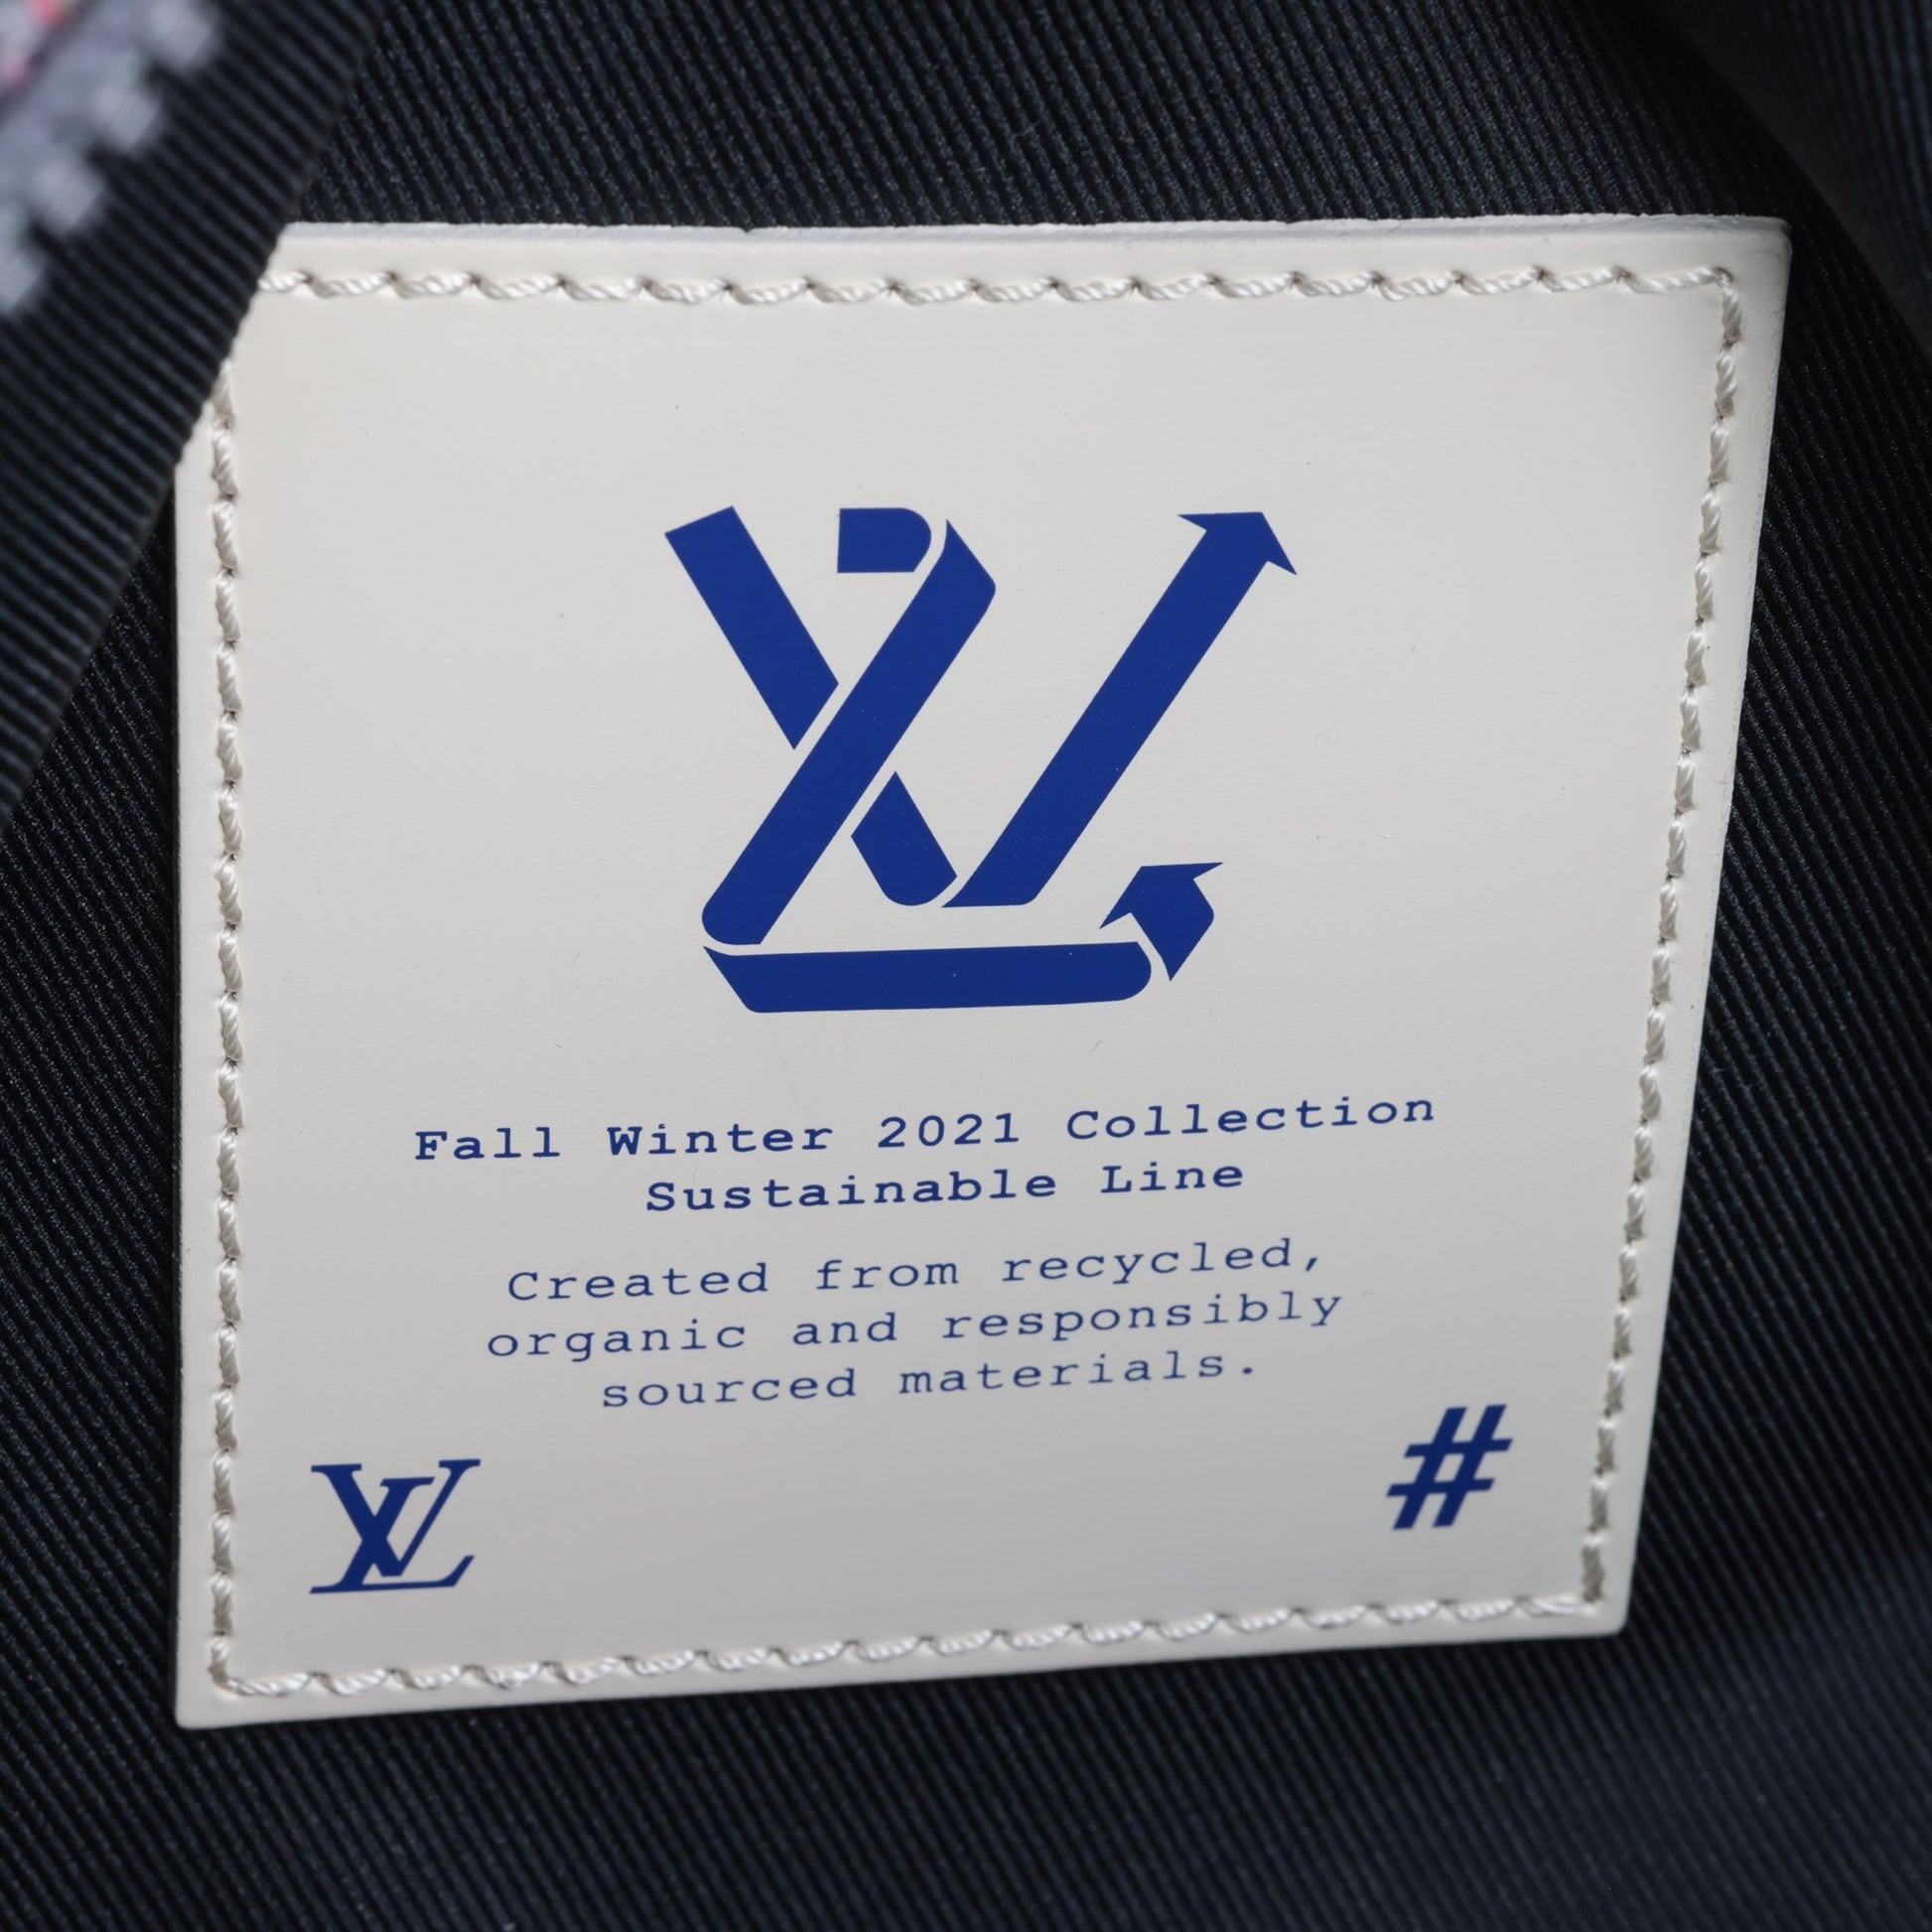 Louis Vuitton x Virgil Abloh Mini Soft Trunk – CnExclusives